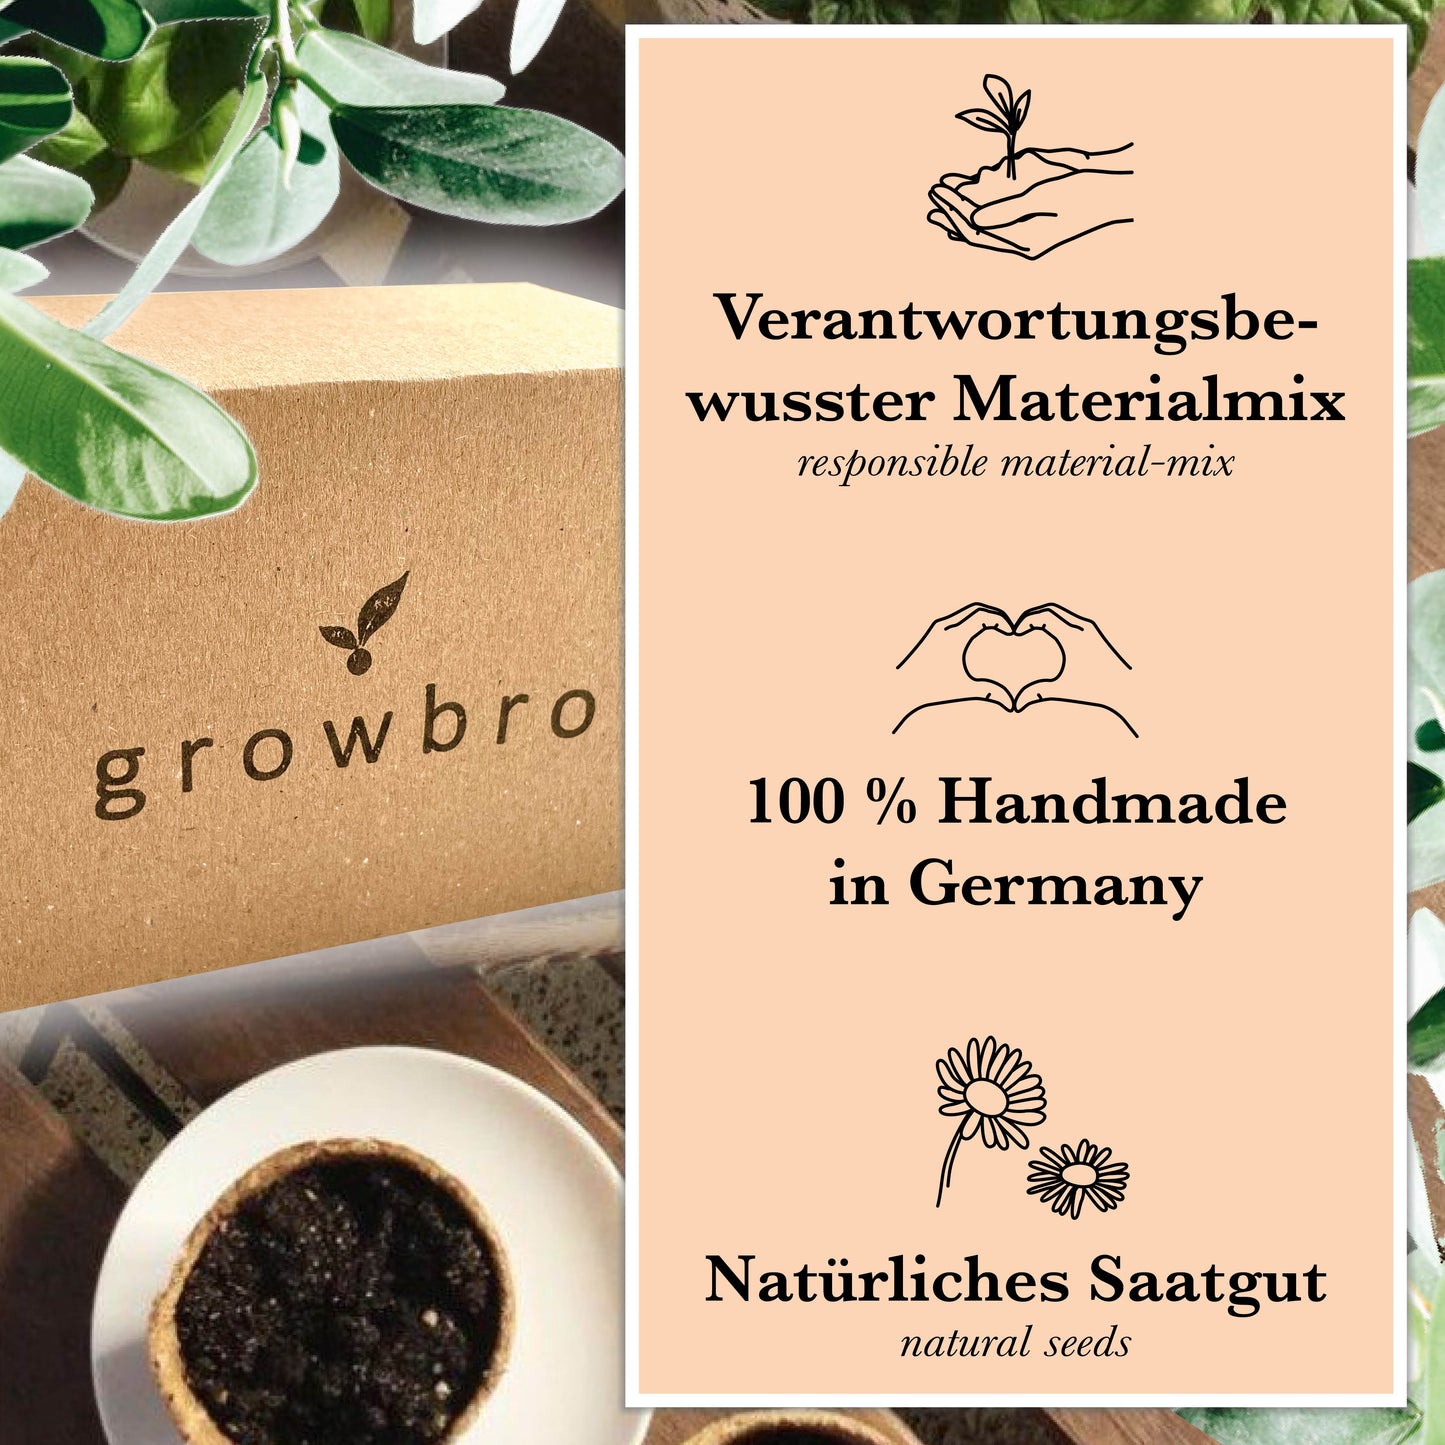 growbro 5 Pflanzen Saatgut Starter Anzucht Set, Züchte Deine eigenen essbaren Pflanzen, handmade, Geschenk # farming # selbstversorger